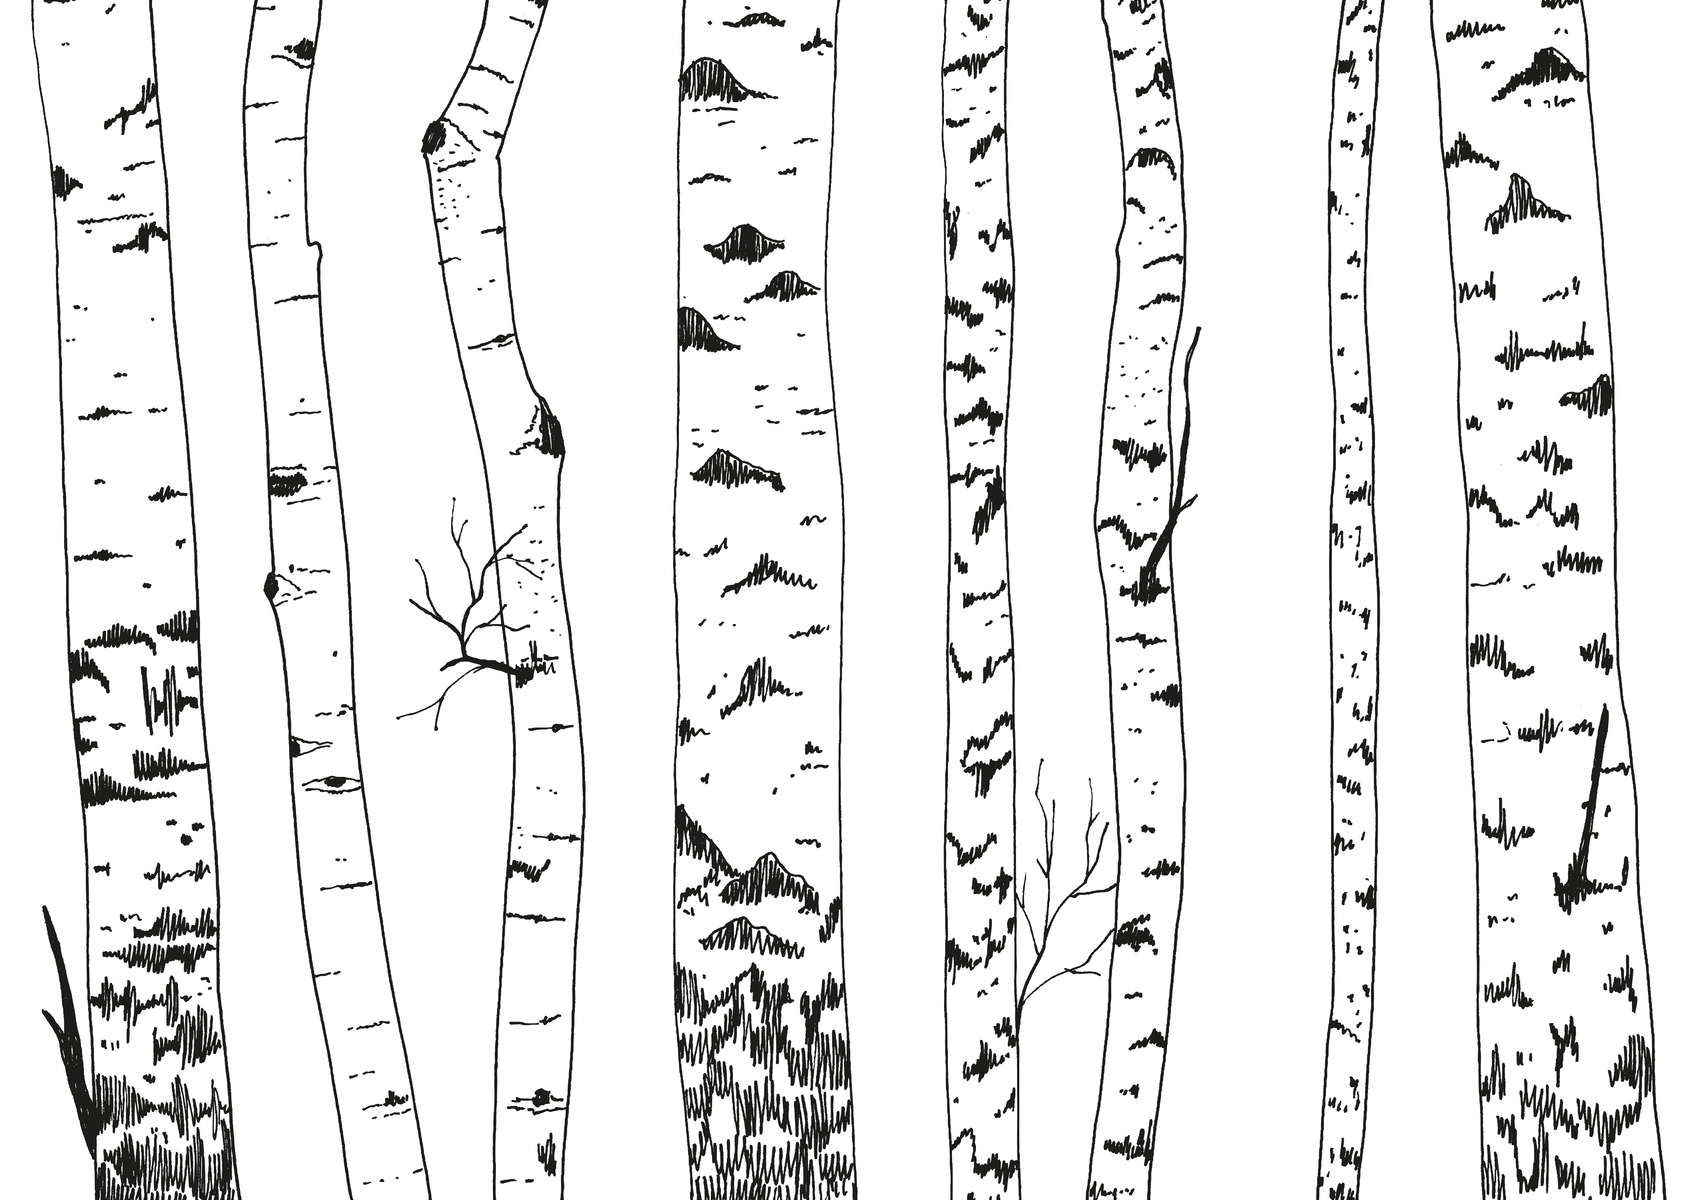             papiers peints à impression numérique forêt de bouleaux dessinée - intissé lisse & légèrement brillant
        